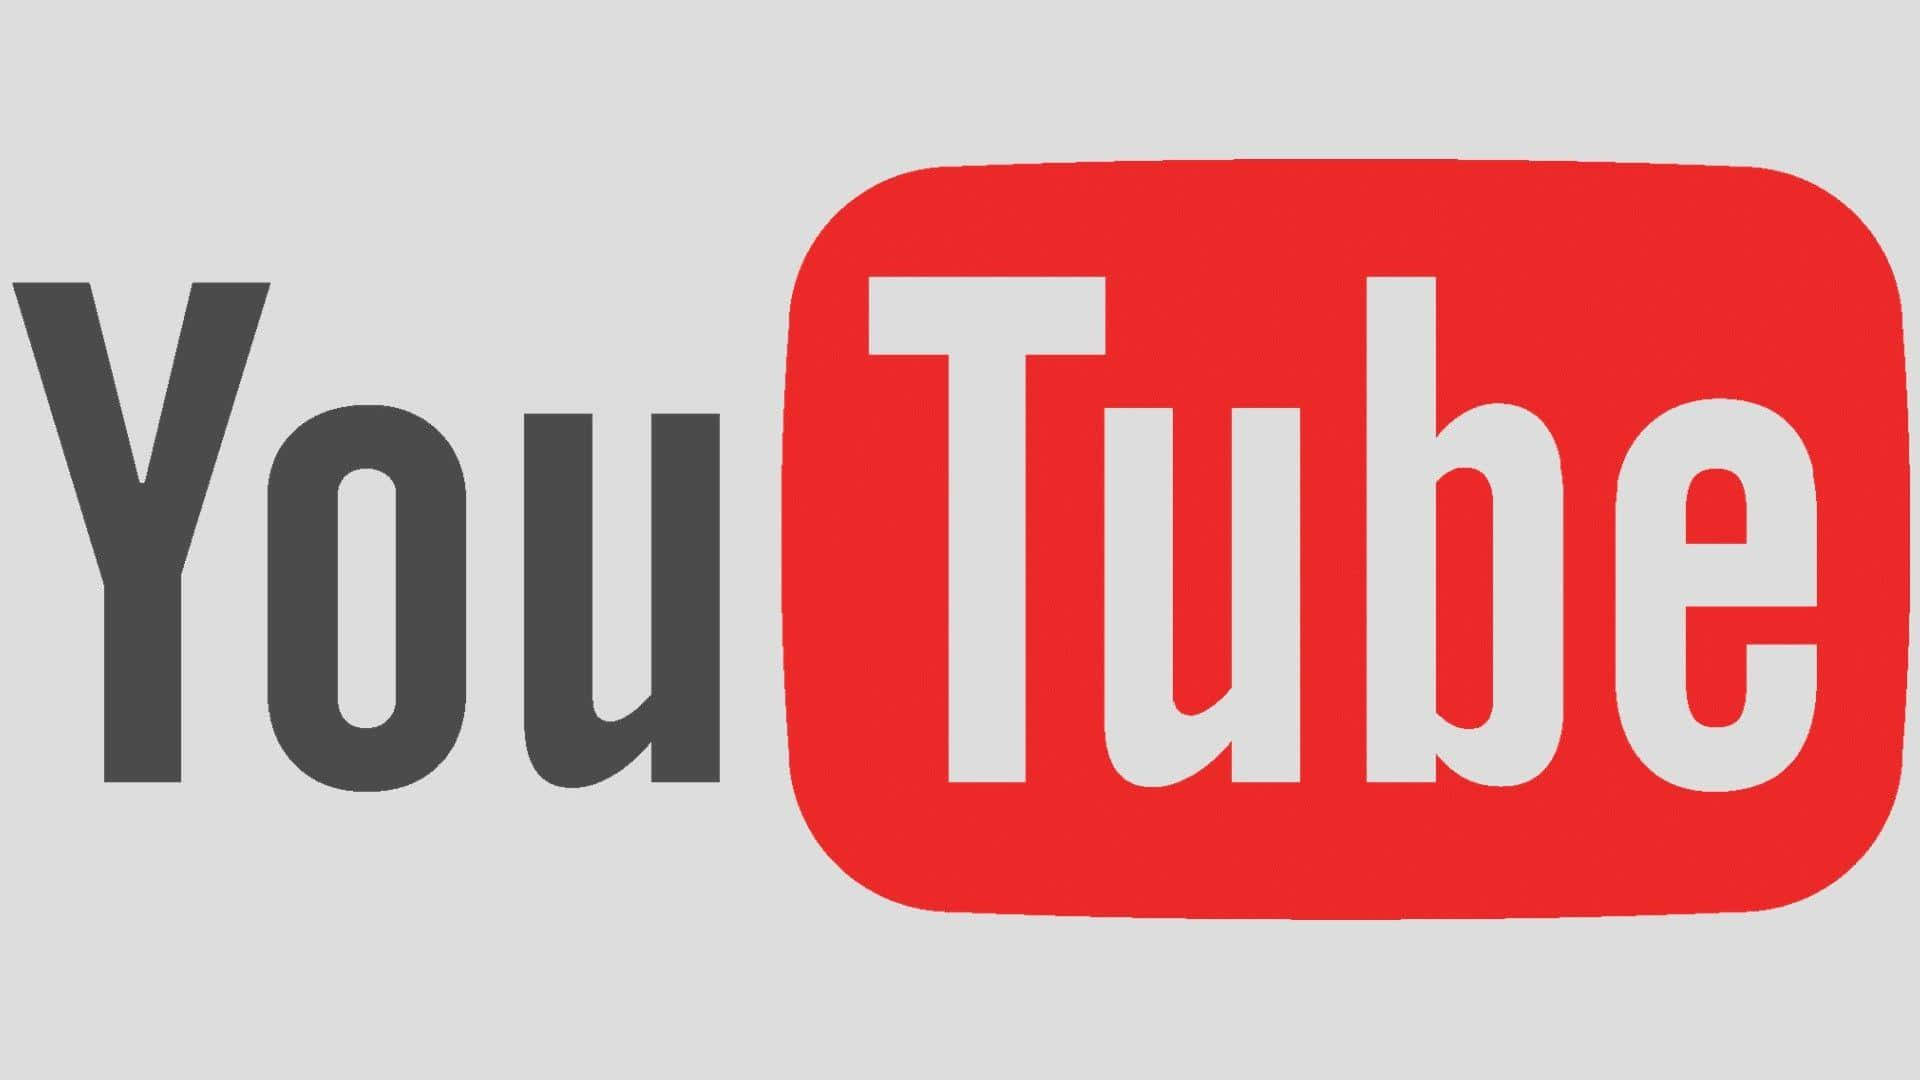 Logotipomoderno De Youtube En Fondo Rojo